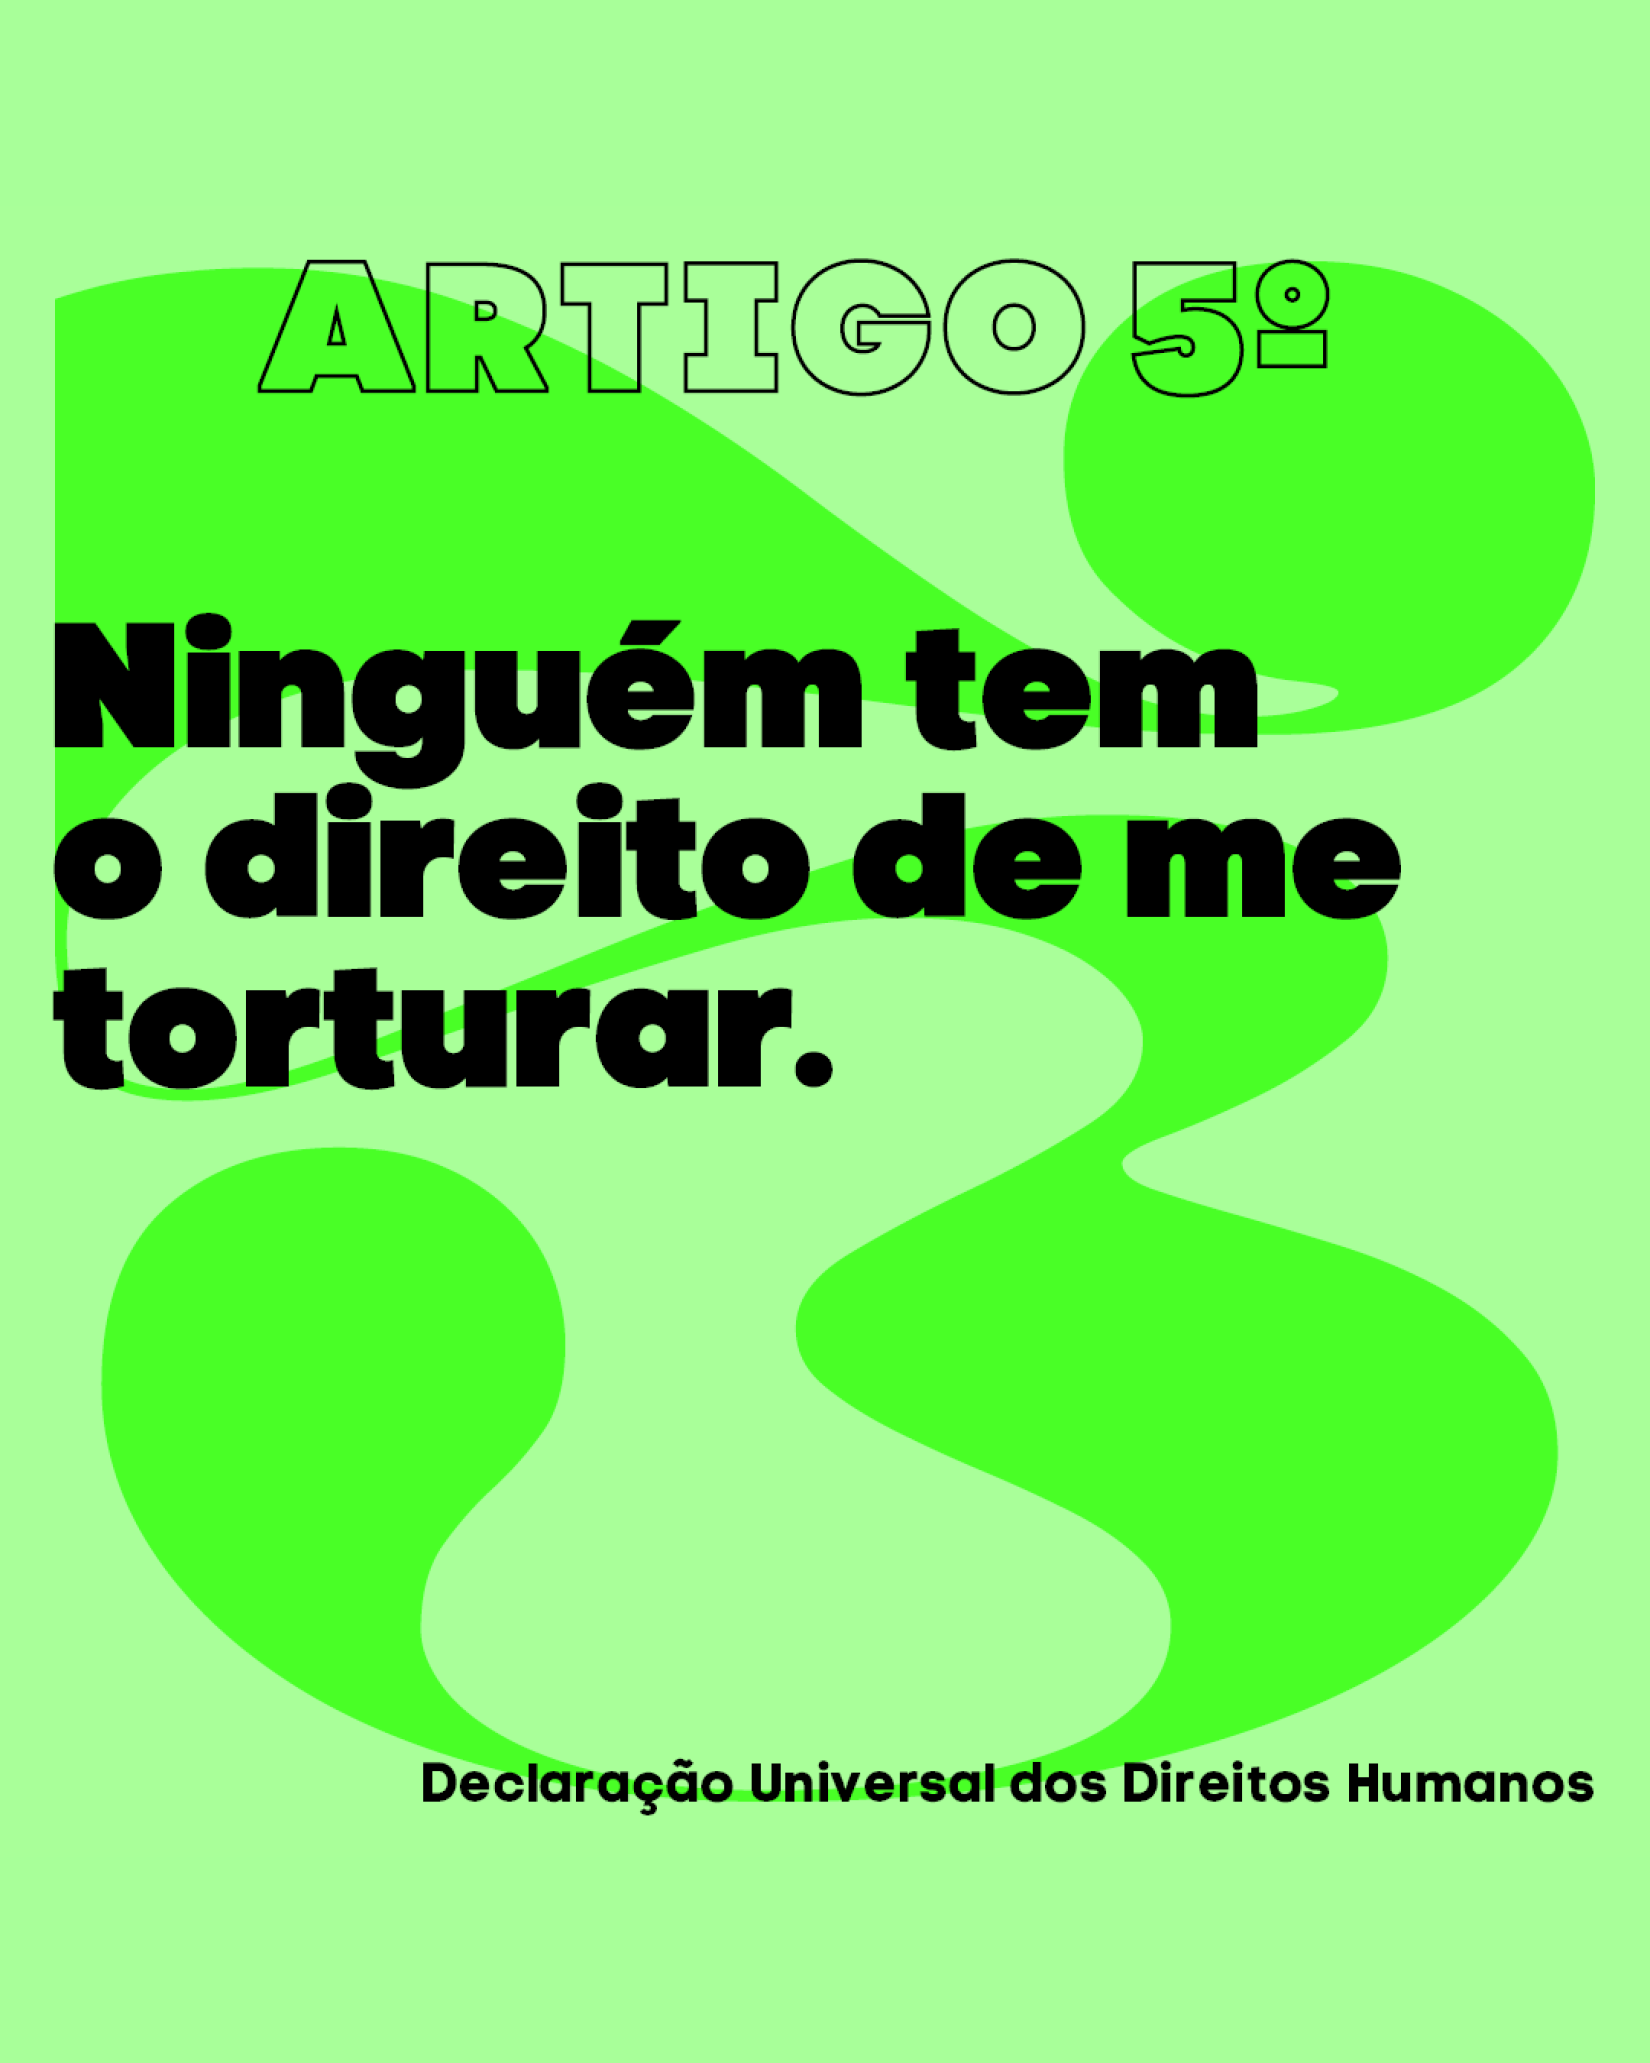 Card da campanha para o Artigo 5º da Declaração Universal dos Direitos Humanos: “Ninguém tem o direito de me torturar”, escrito em primeira pessoa.